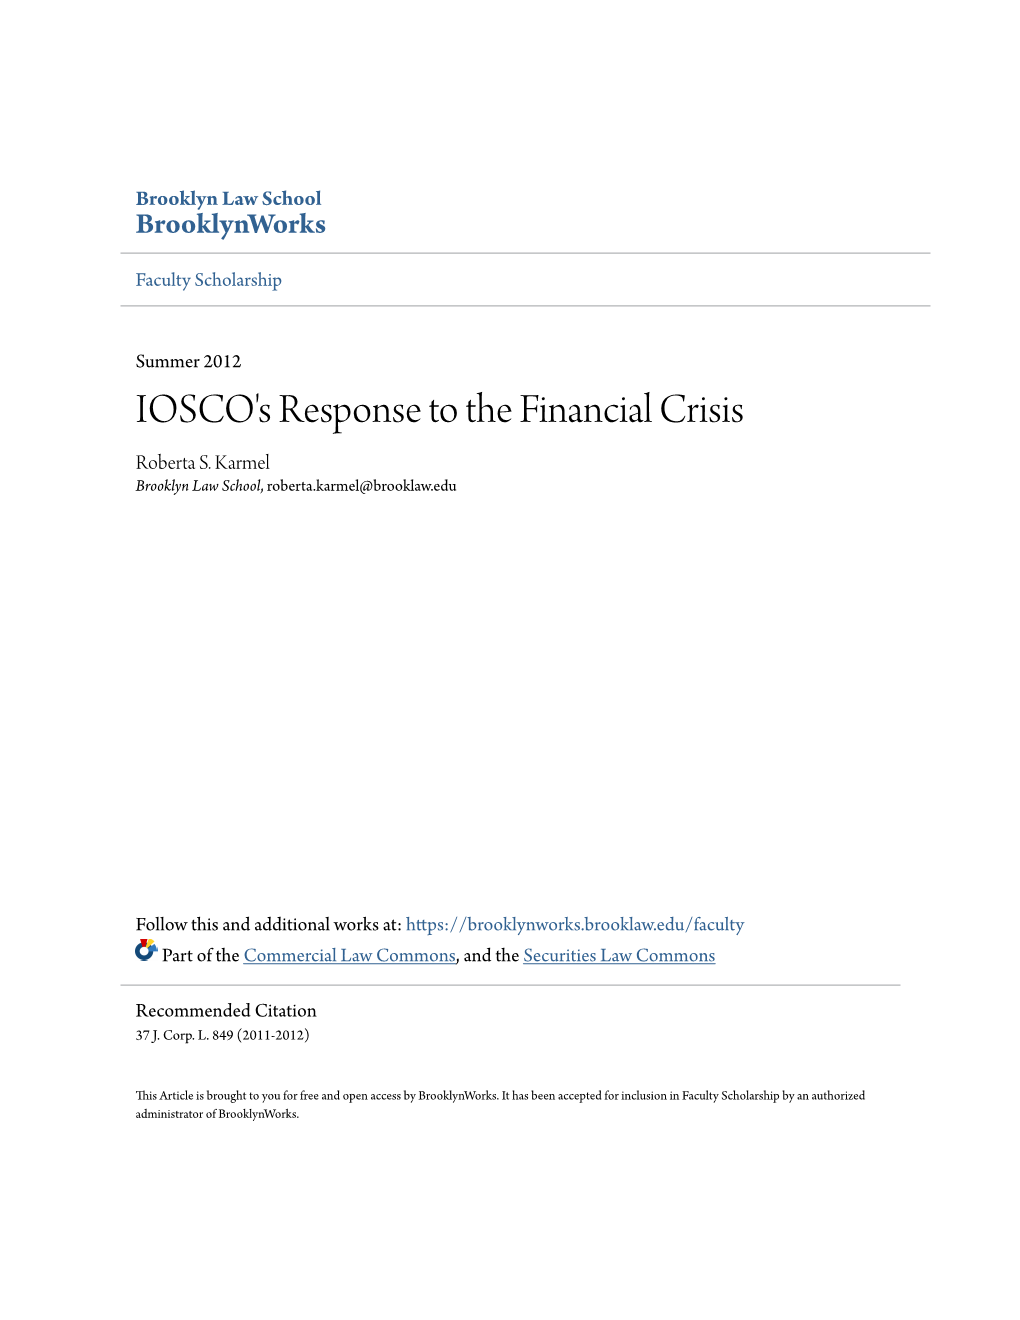 IOSCO's Response to the Financial Crisis Roberta S